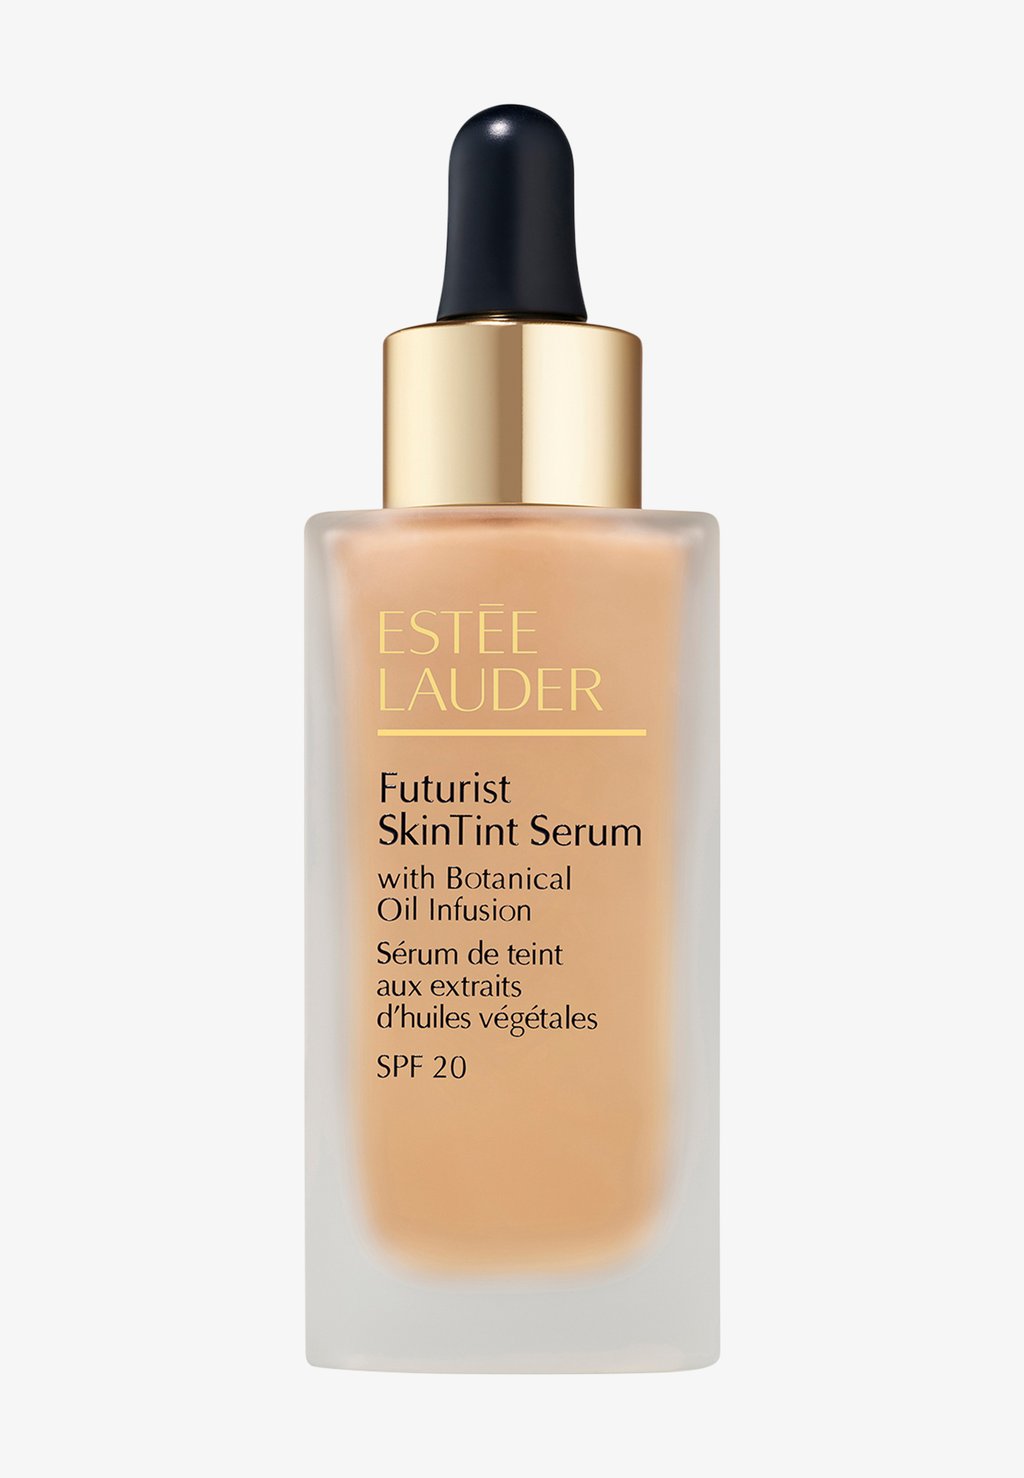 Тональный крем Futurist Skintint Serum Foundation ESTÉE LAUDER, цвет 1n1 ivory nude